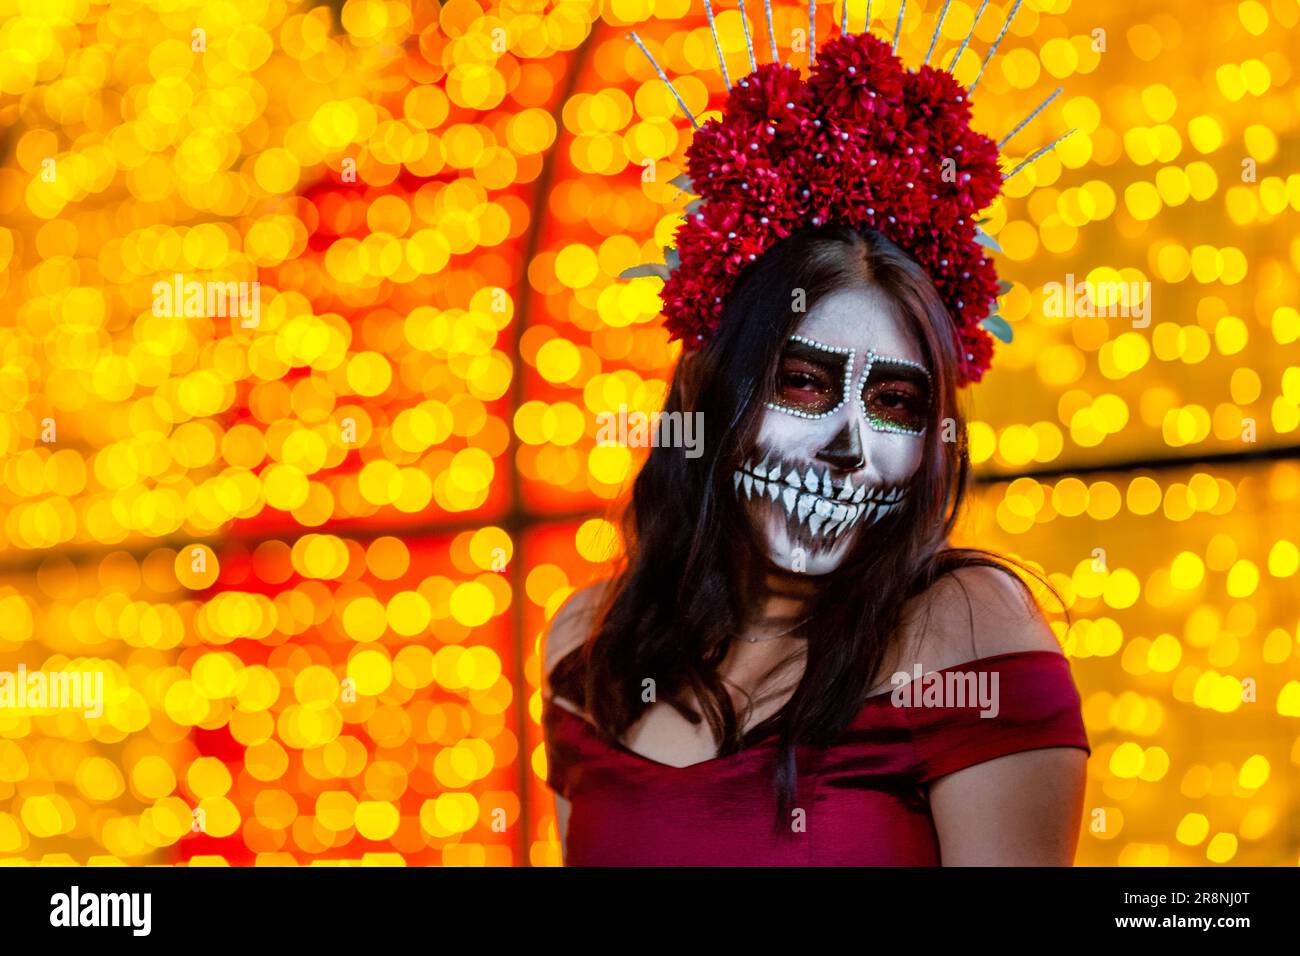 Eine junge Mexikanerin, verkleidet als La Catrina, nimmt an den Feierlichkeiten zum Todestag in Morelia, Mexiko, Teil. Stockfoto